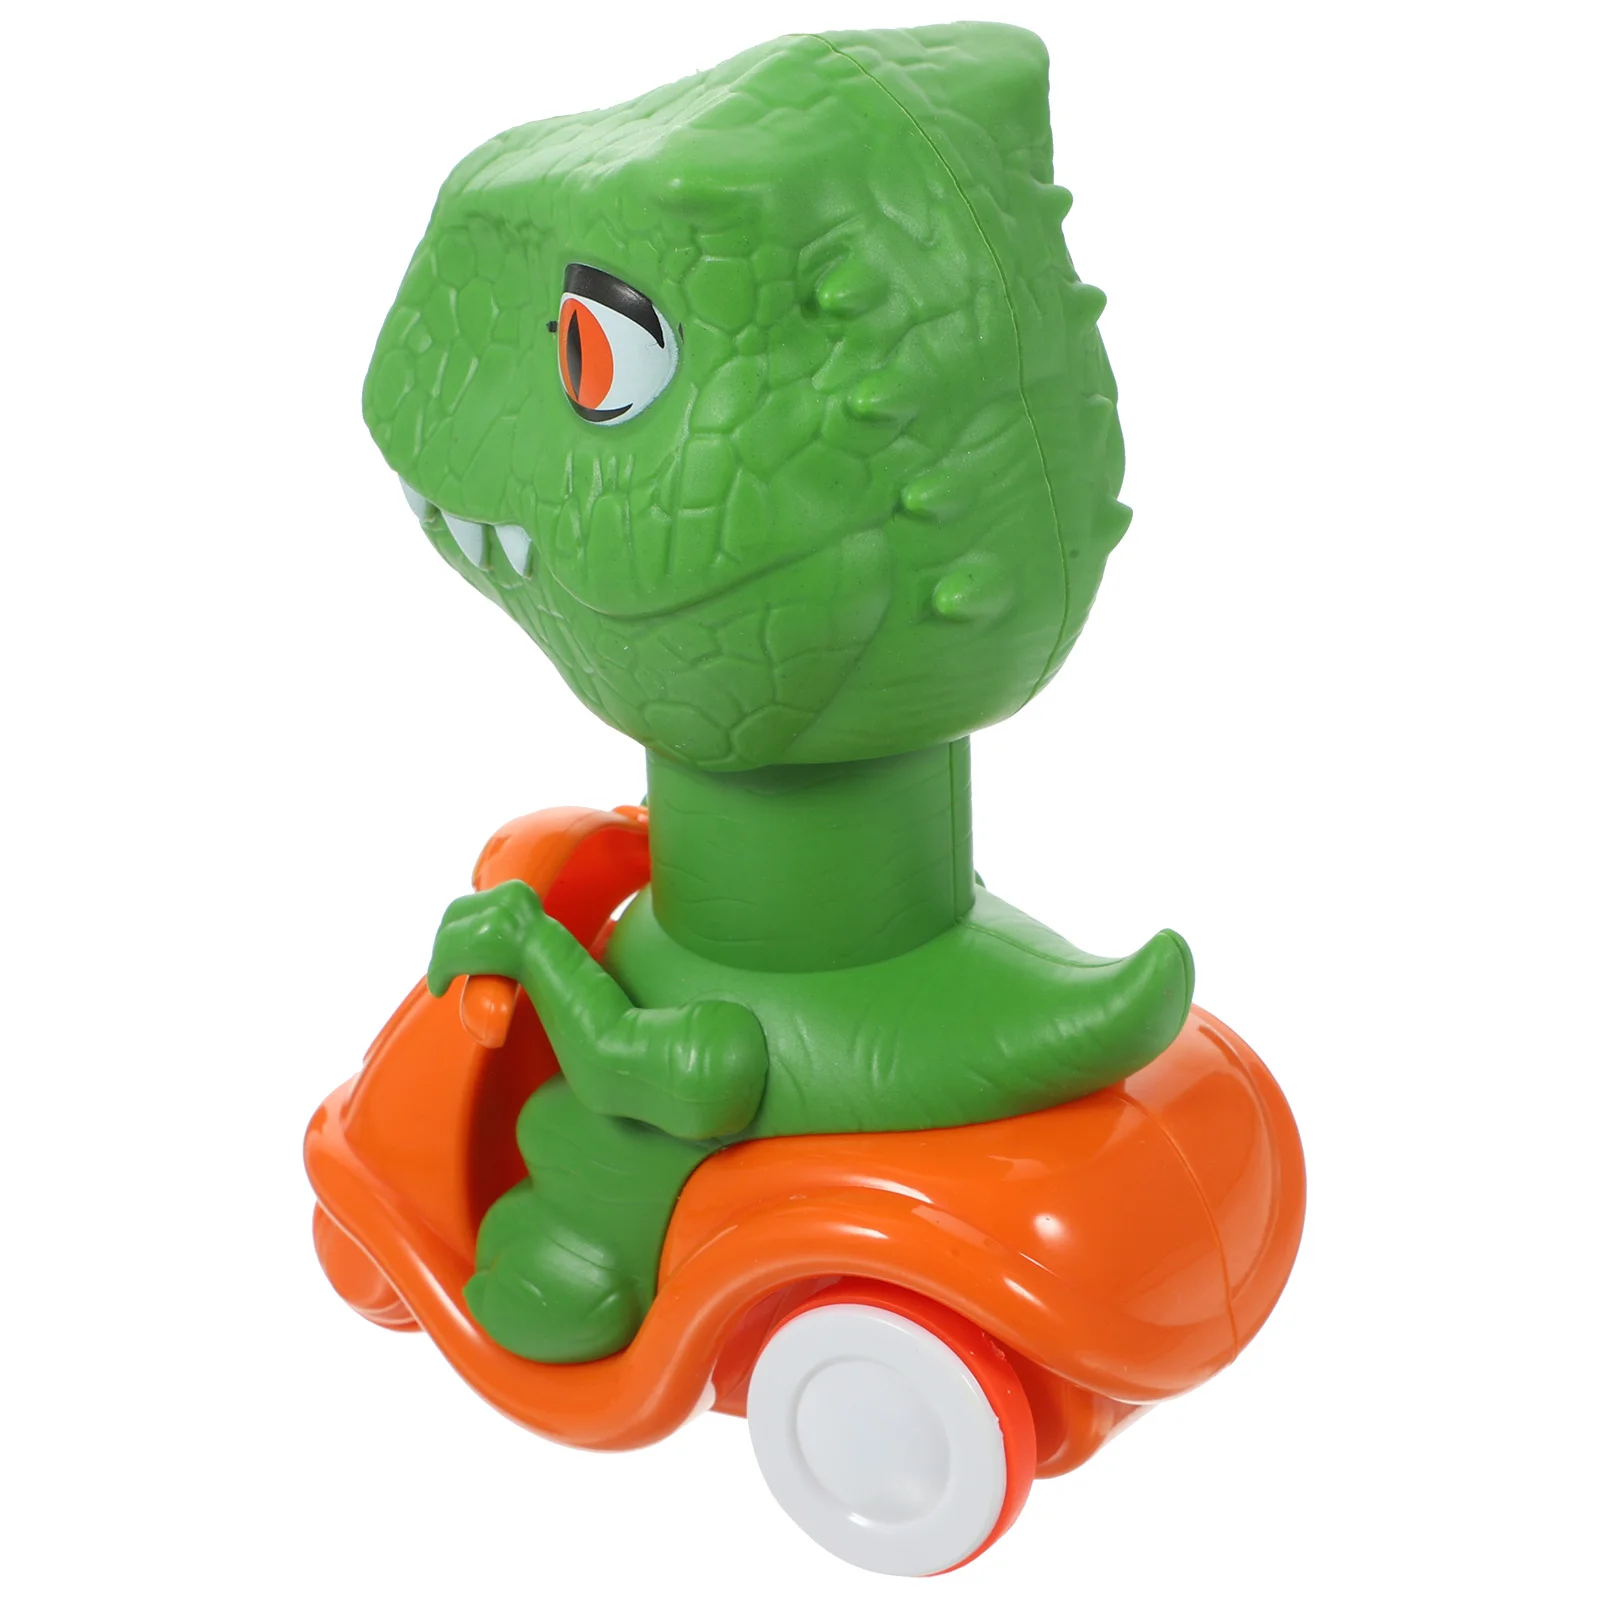 

Креативная игрушка-динозавр, пластиковая игрушка для мальчиков, игрушки, милые динозавры, интересный автомобиль, пресс, затем покупайте детей